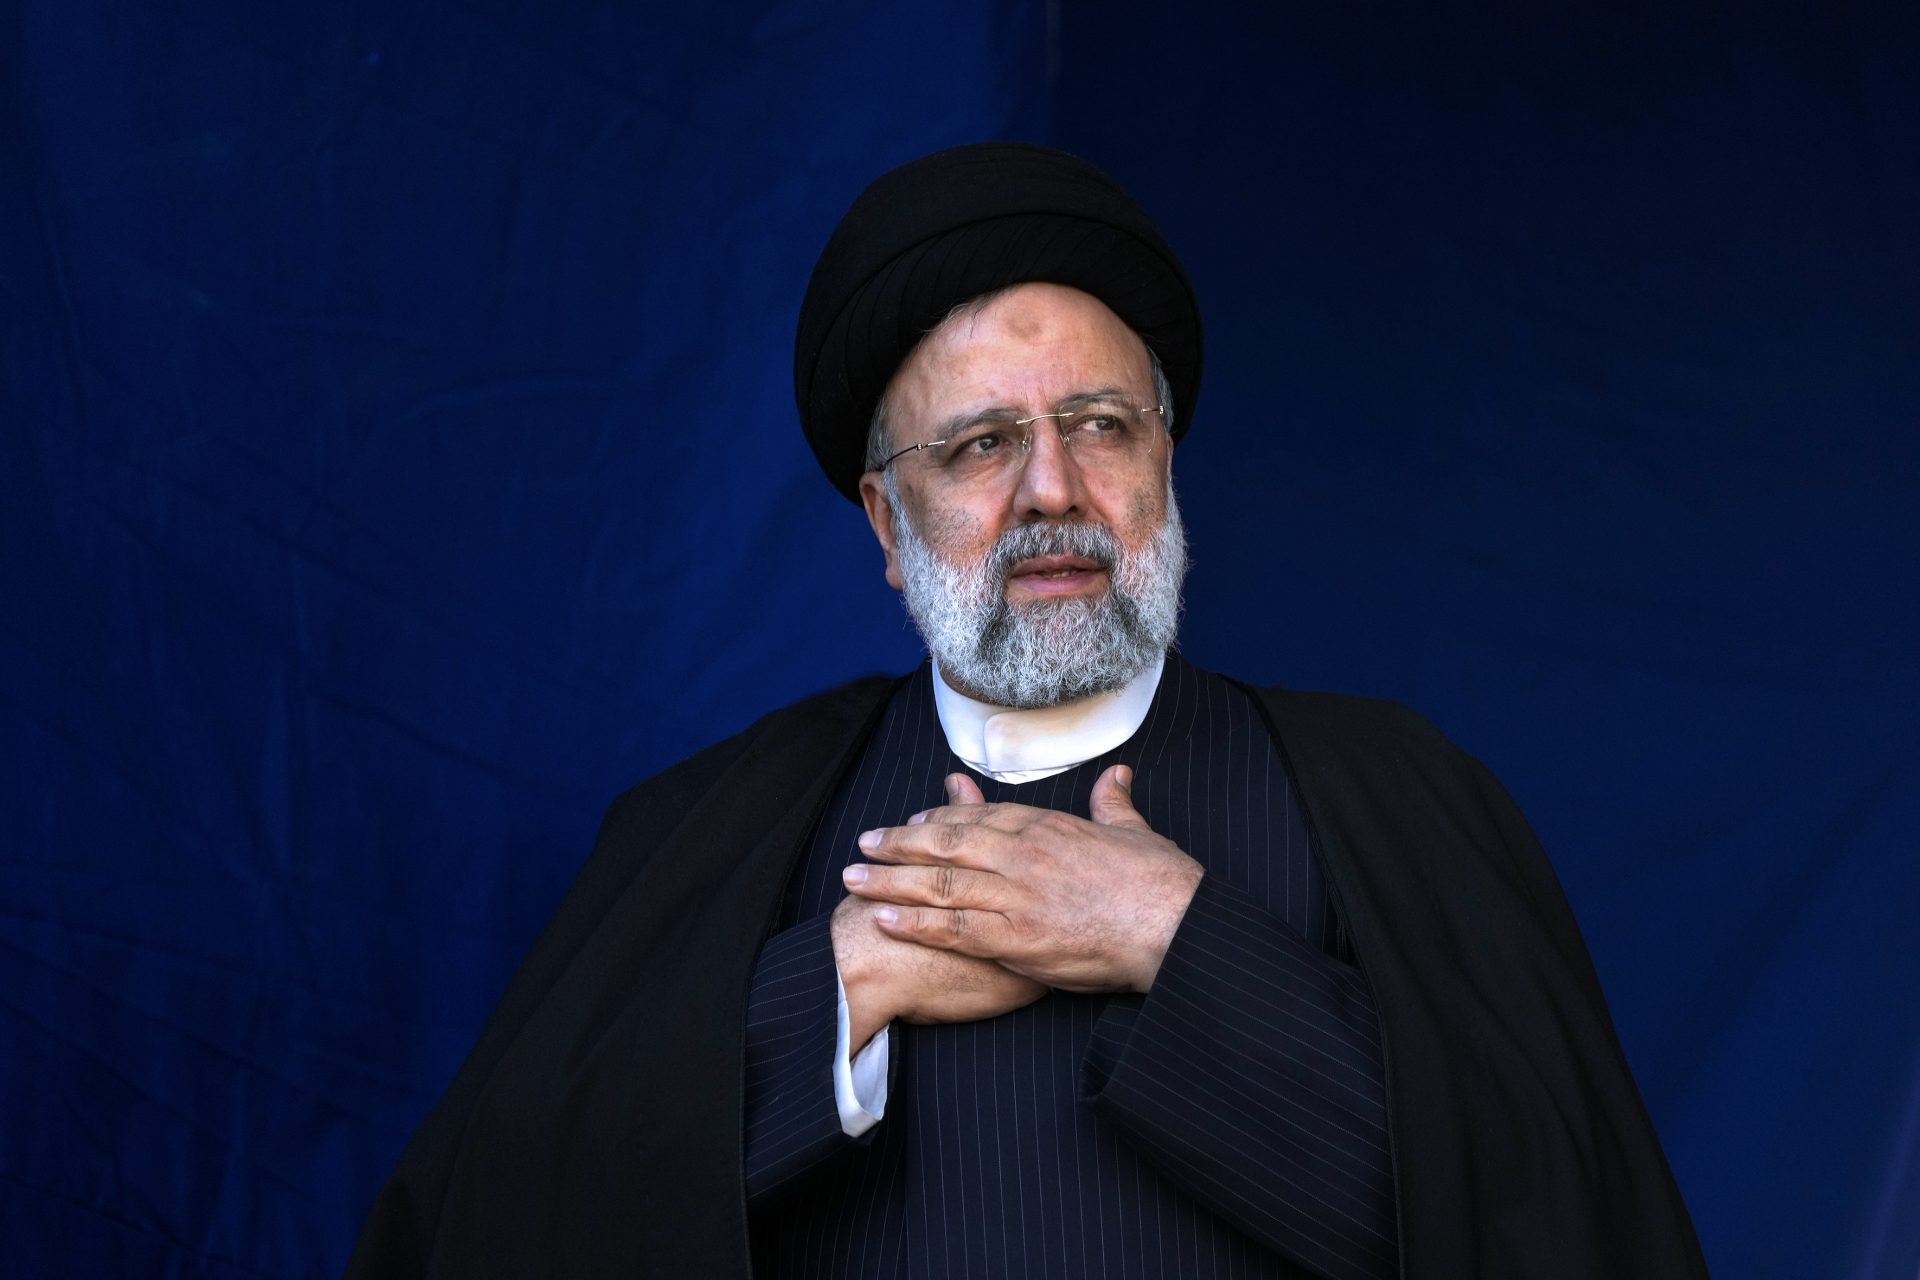 Décès d'Ebrahim Raisi, président iranien, dans un crash à 63 ans